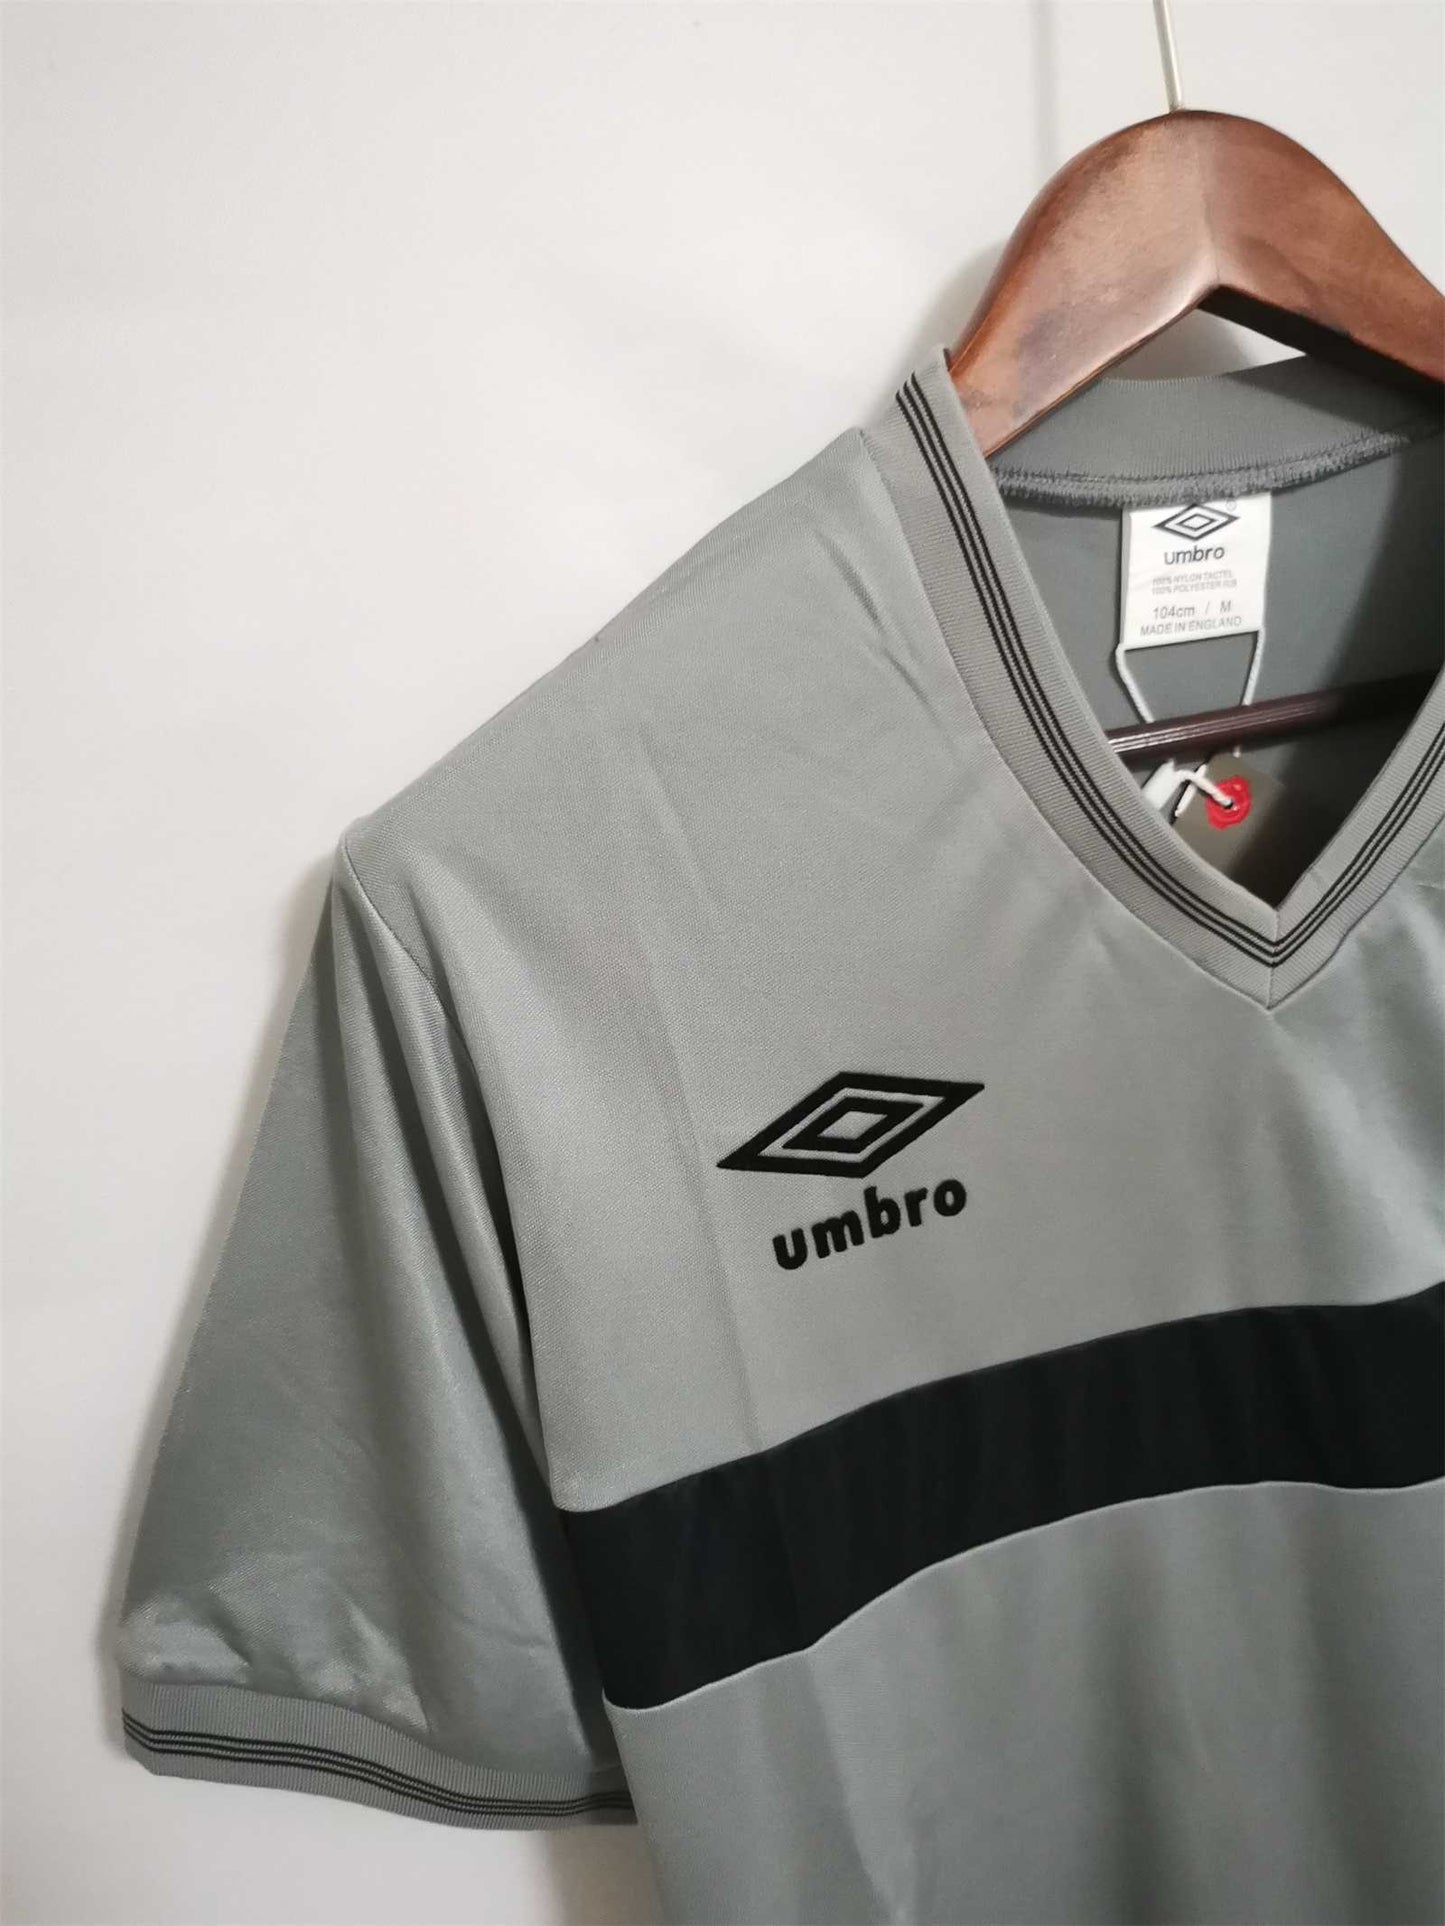 Newcastle. Camiseta visitante 1986-1987